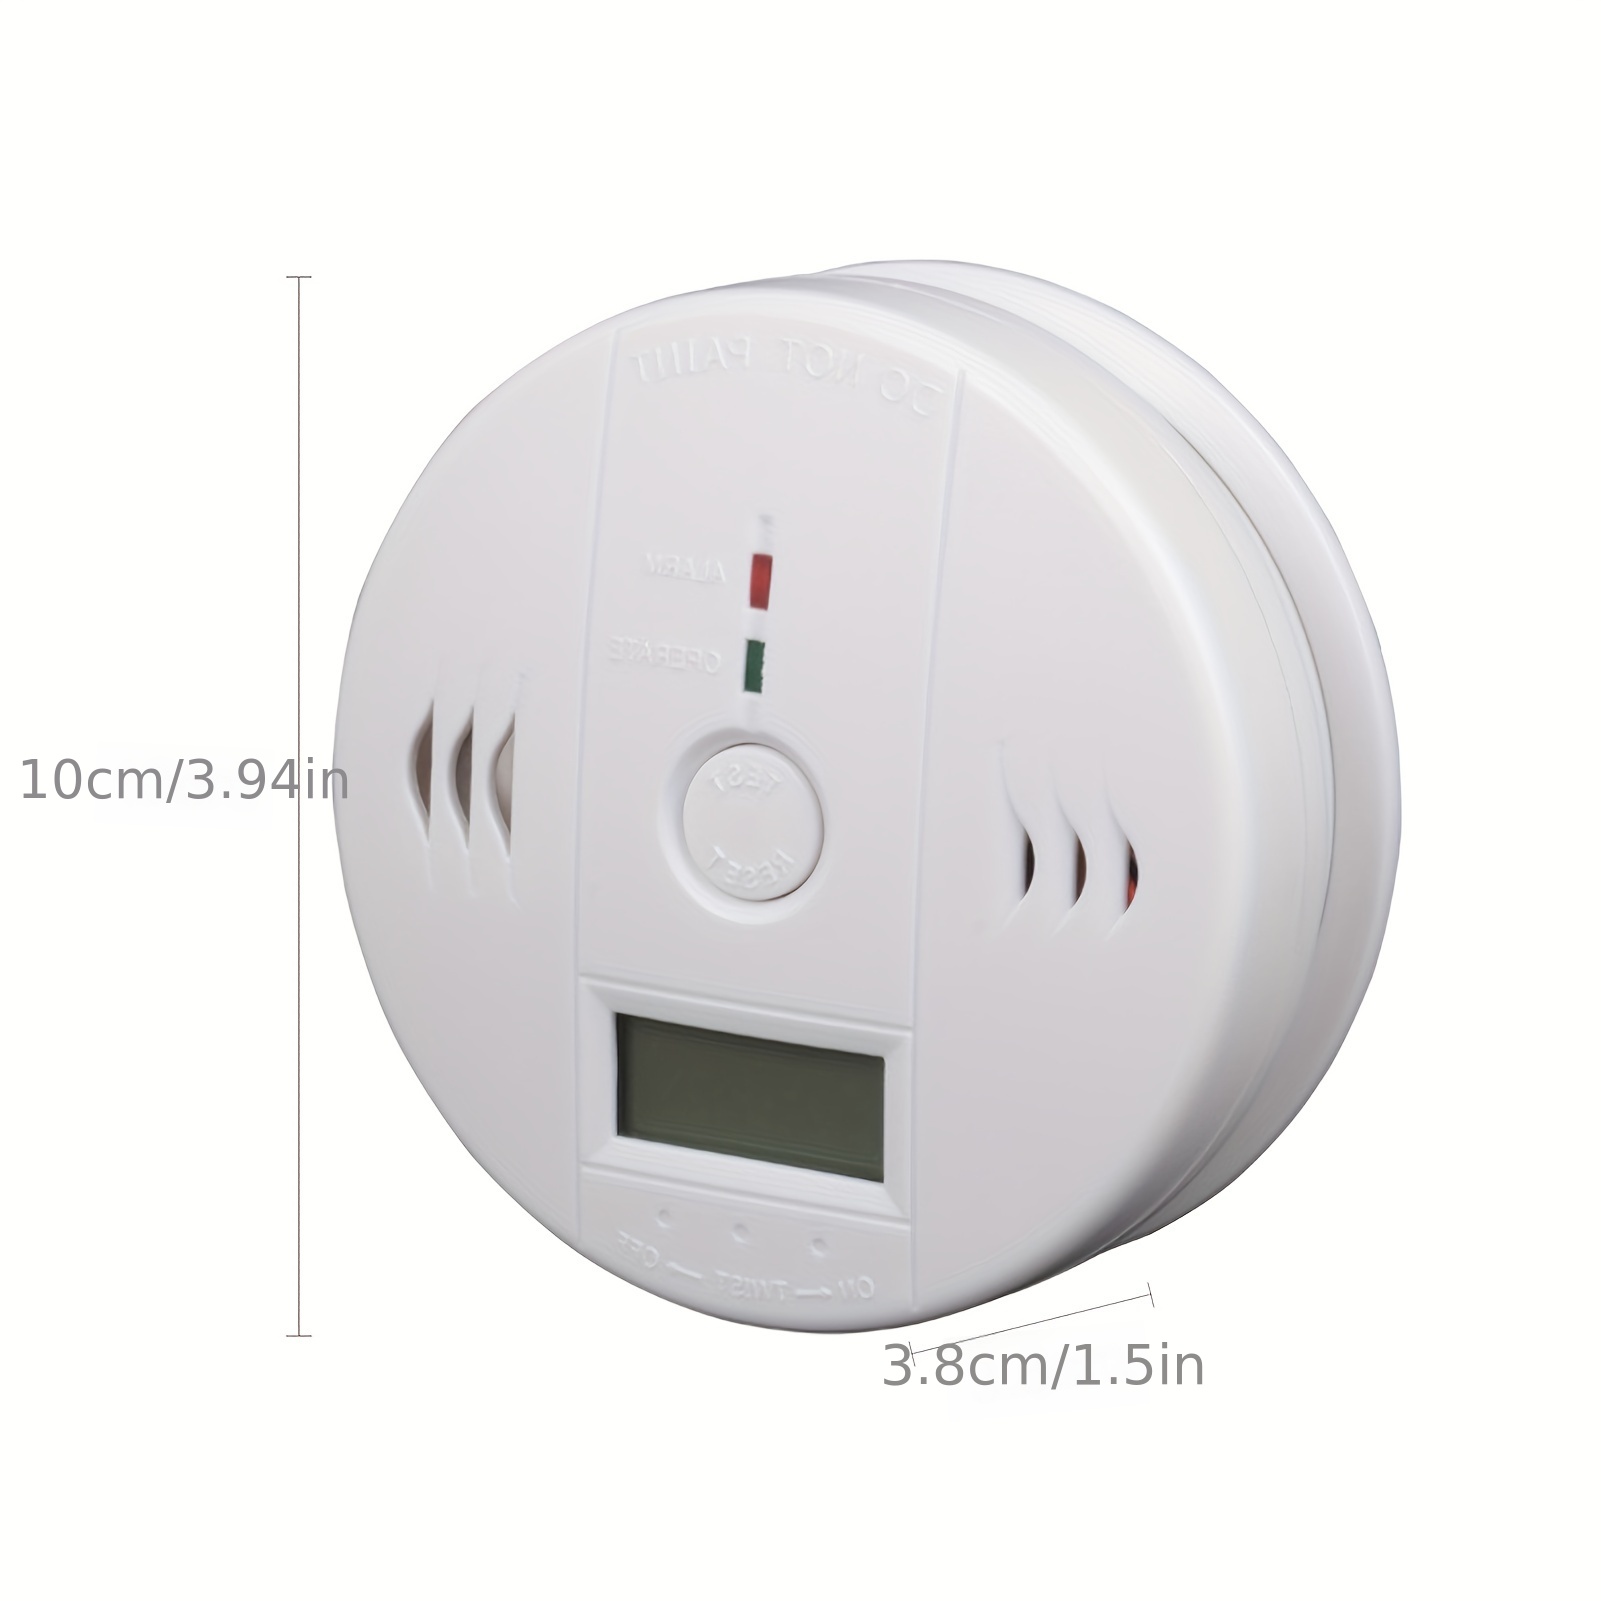 Alarma con detector de Monóxido de carbono en MovilTecno.com 